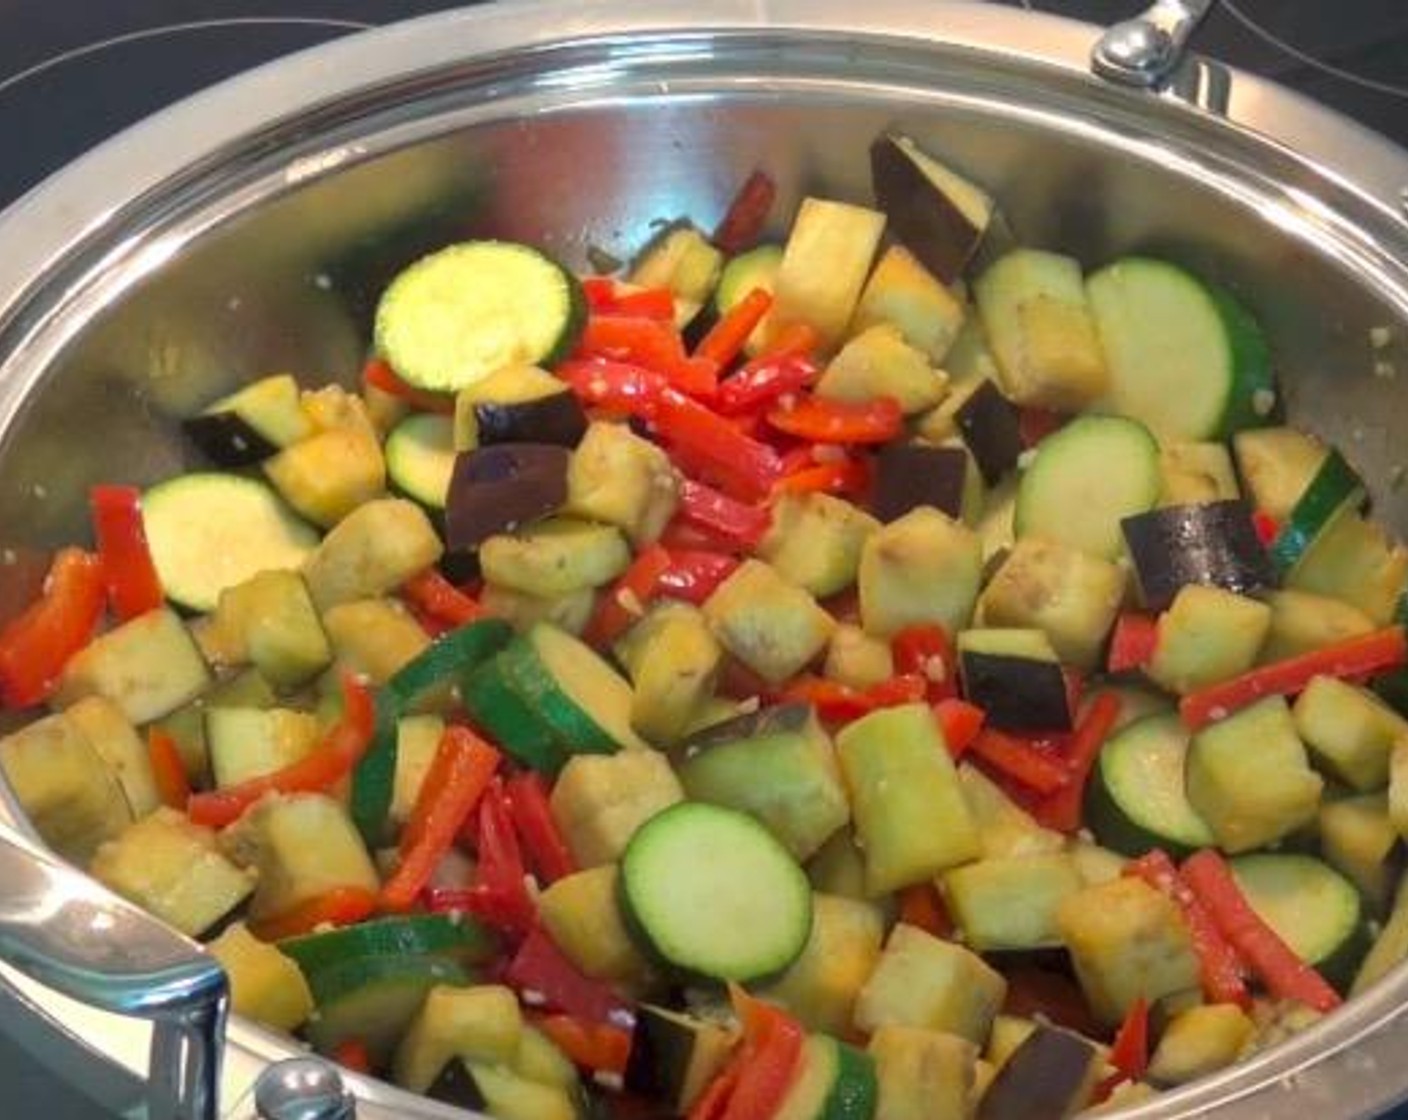 Schritt 2 Geschnittene Aubergine (1) und geschnittene Zucchinis (2) hinzufügen. Umrühren und weitere 2 Minuten kochen, bis das Gemüse beginnt, weich zu werden.